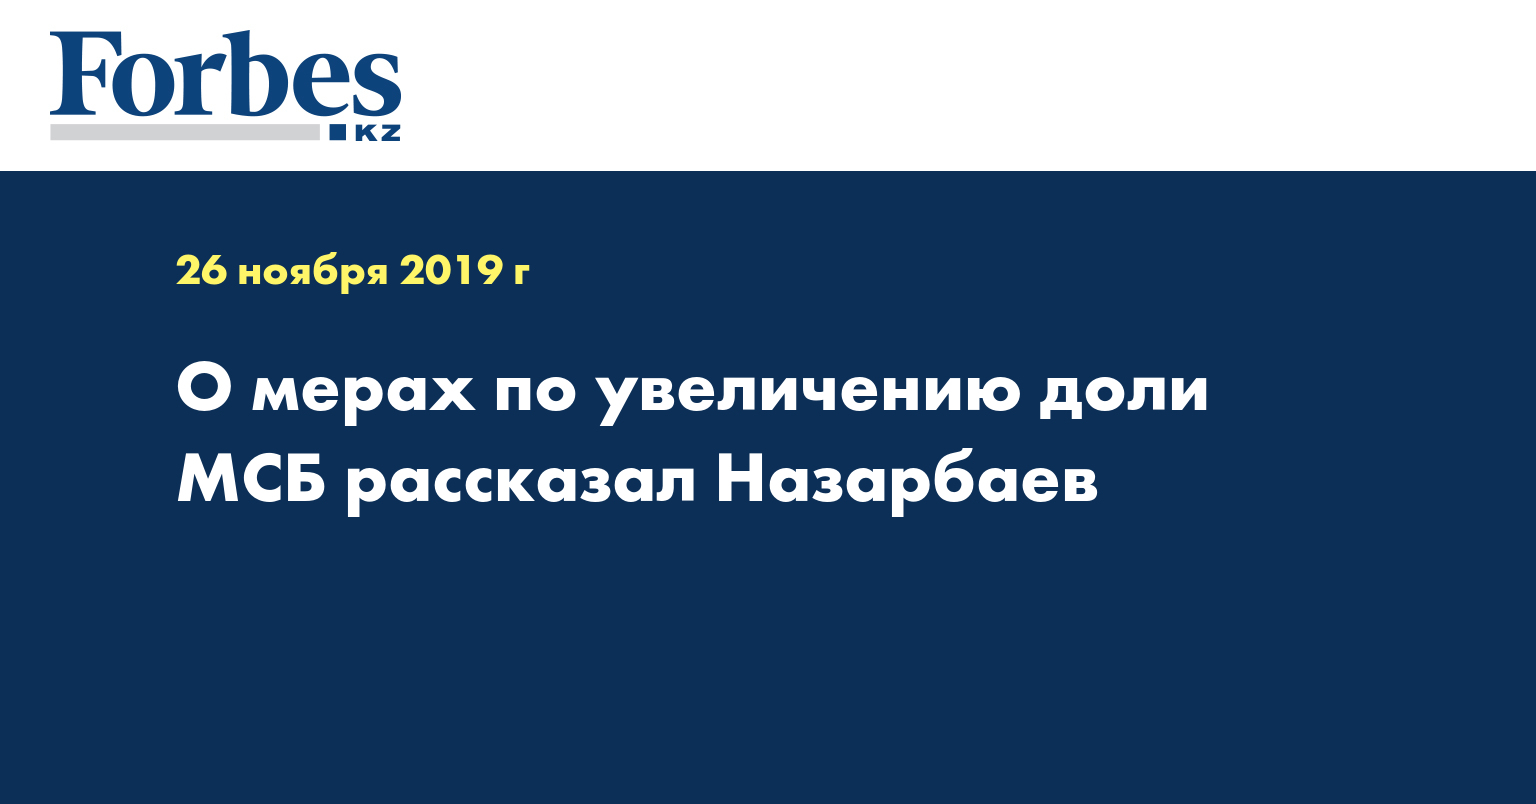  О мерах по увеличению доли МСБ рассказал Назарбаев